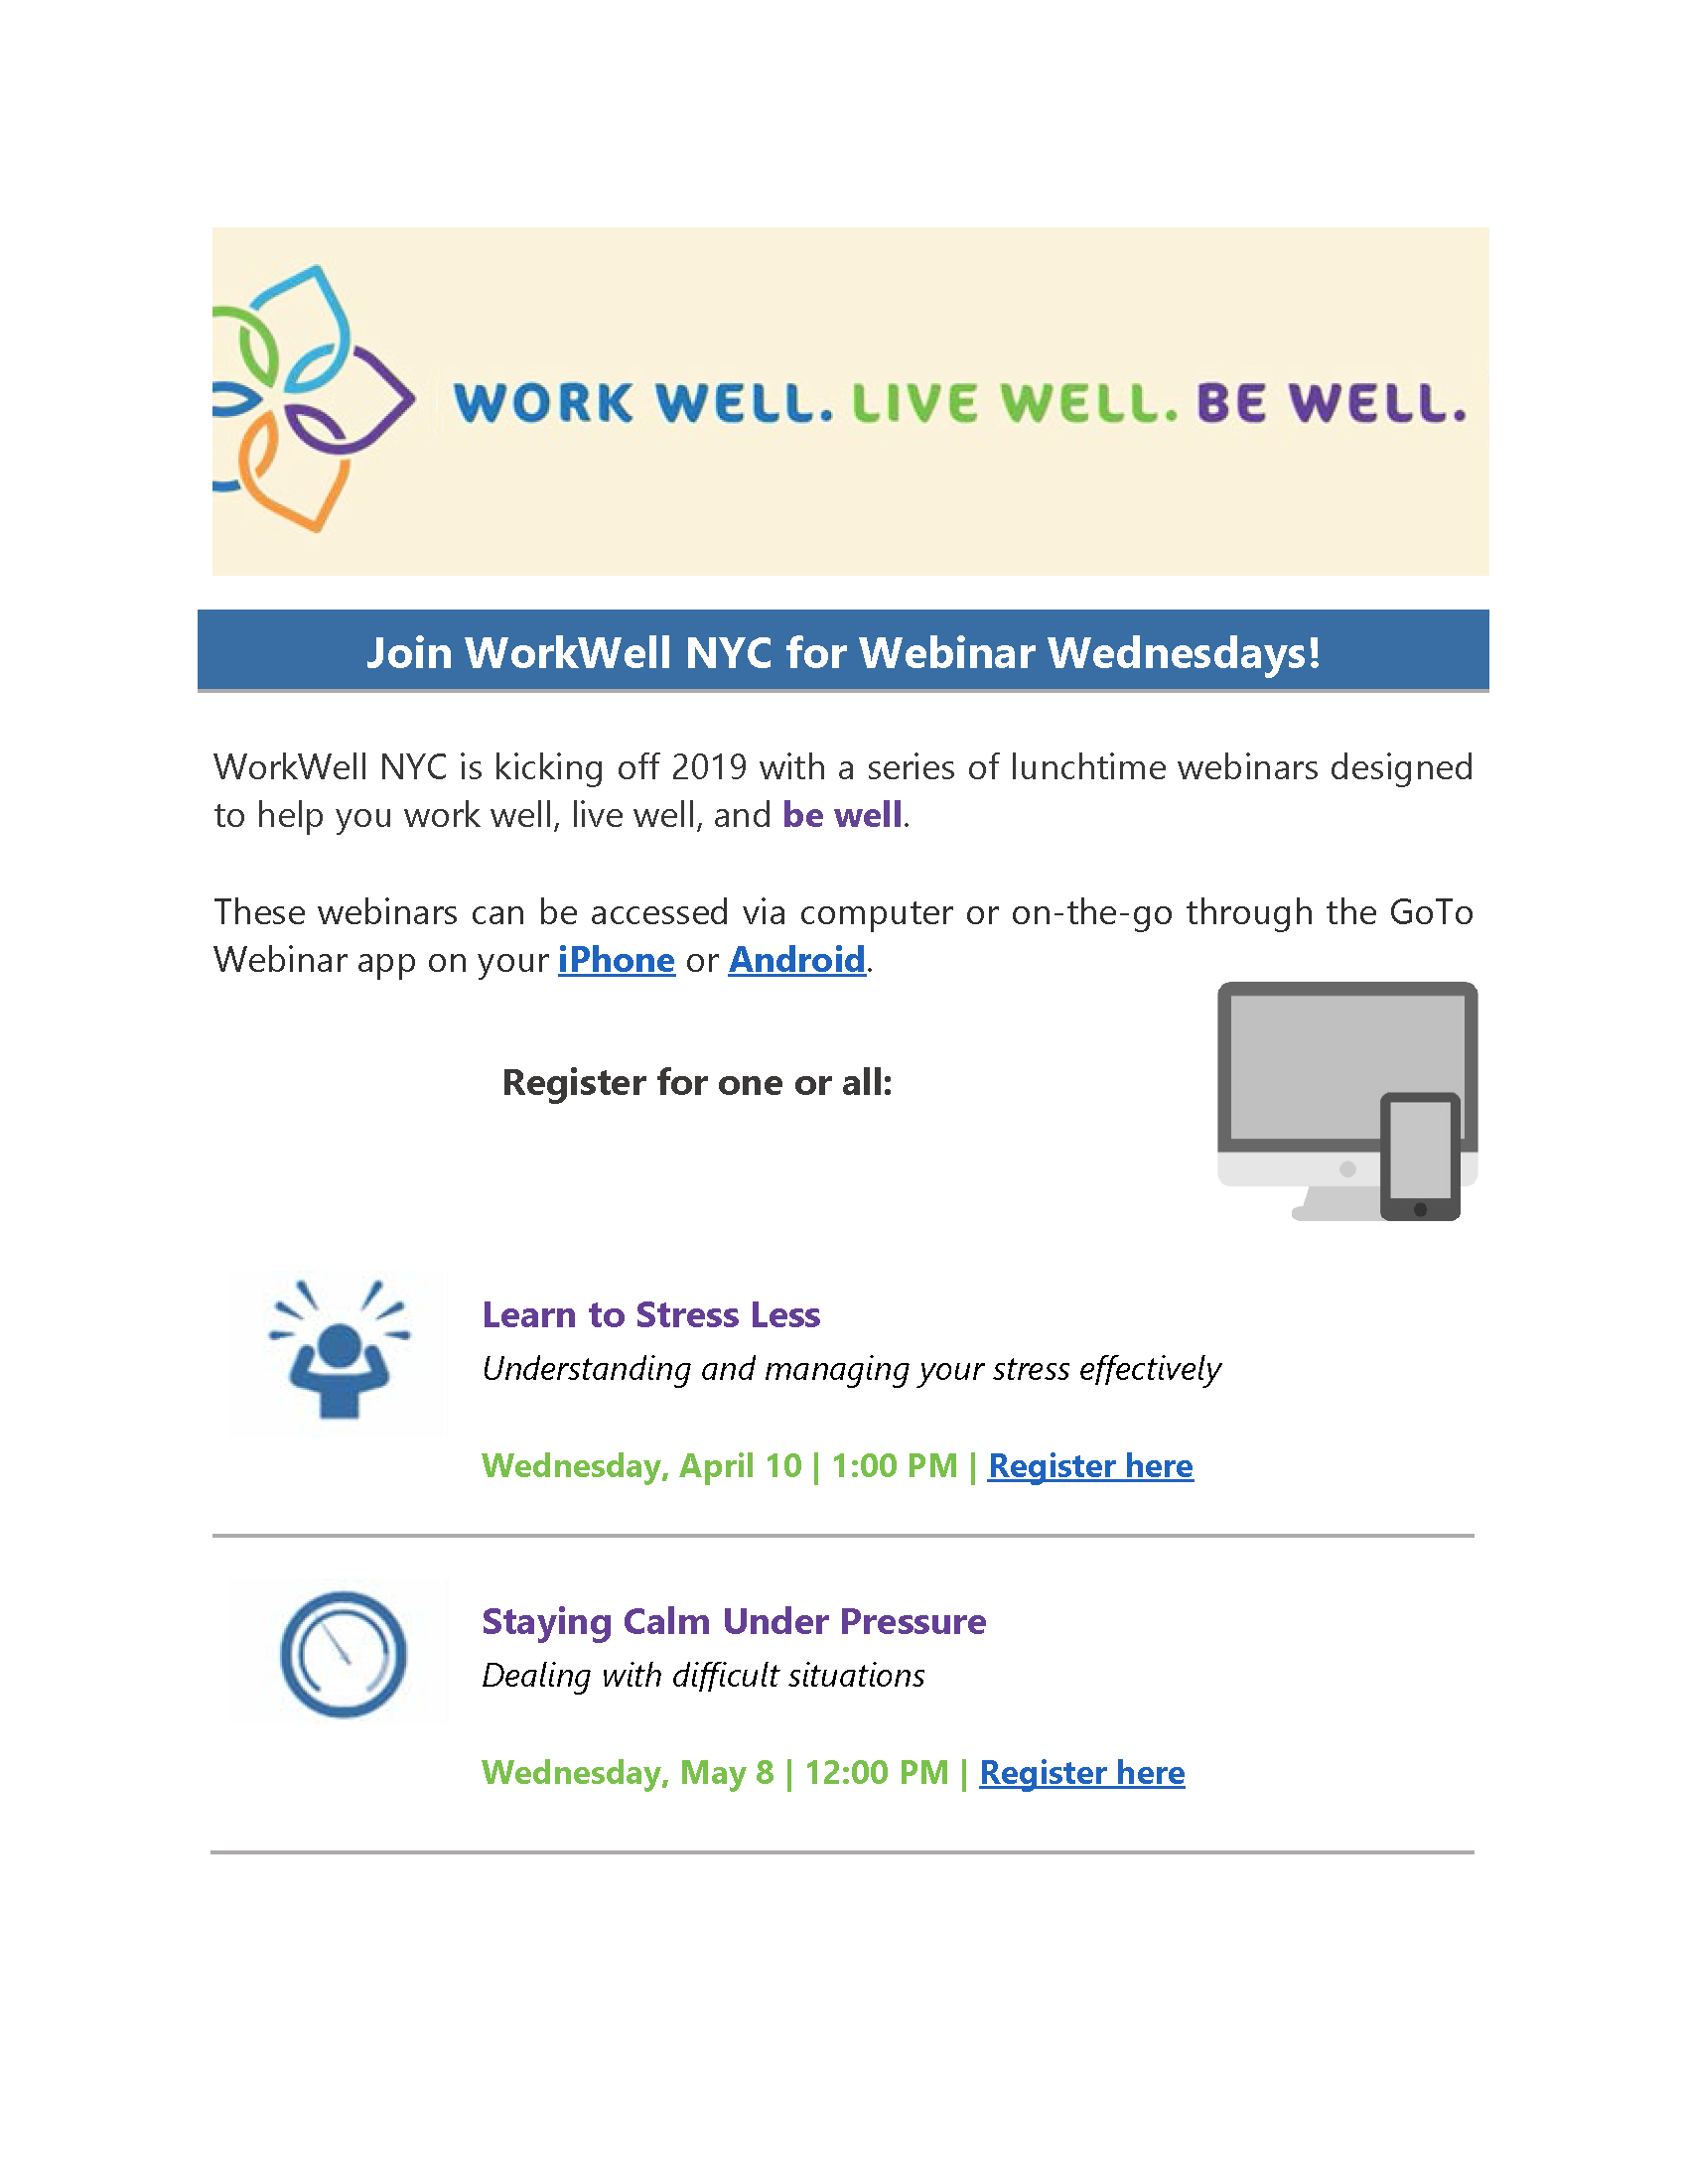 WorkWell webinars